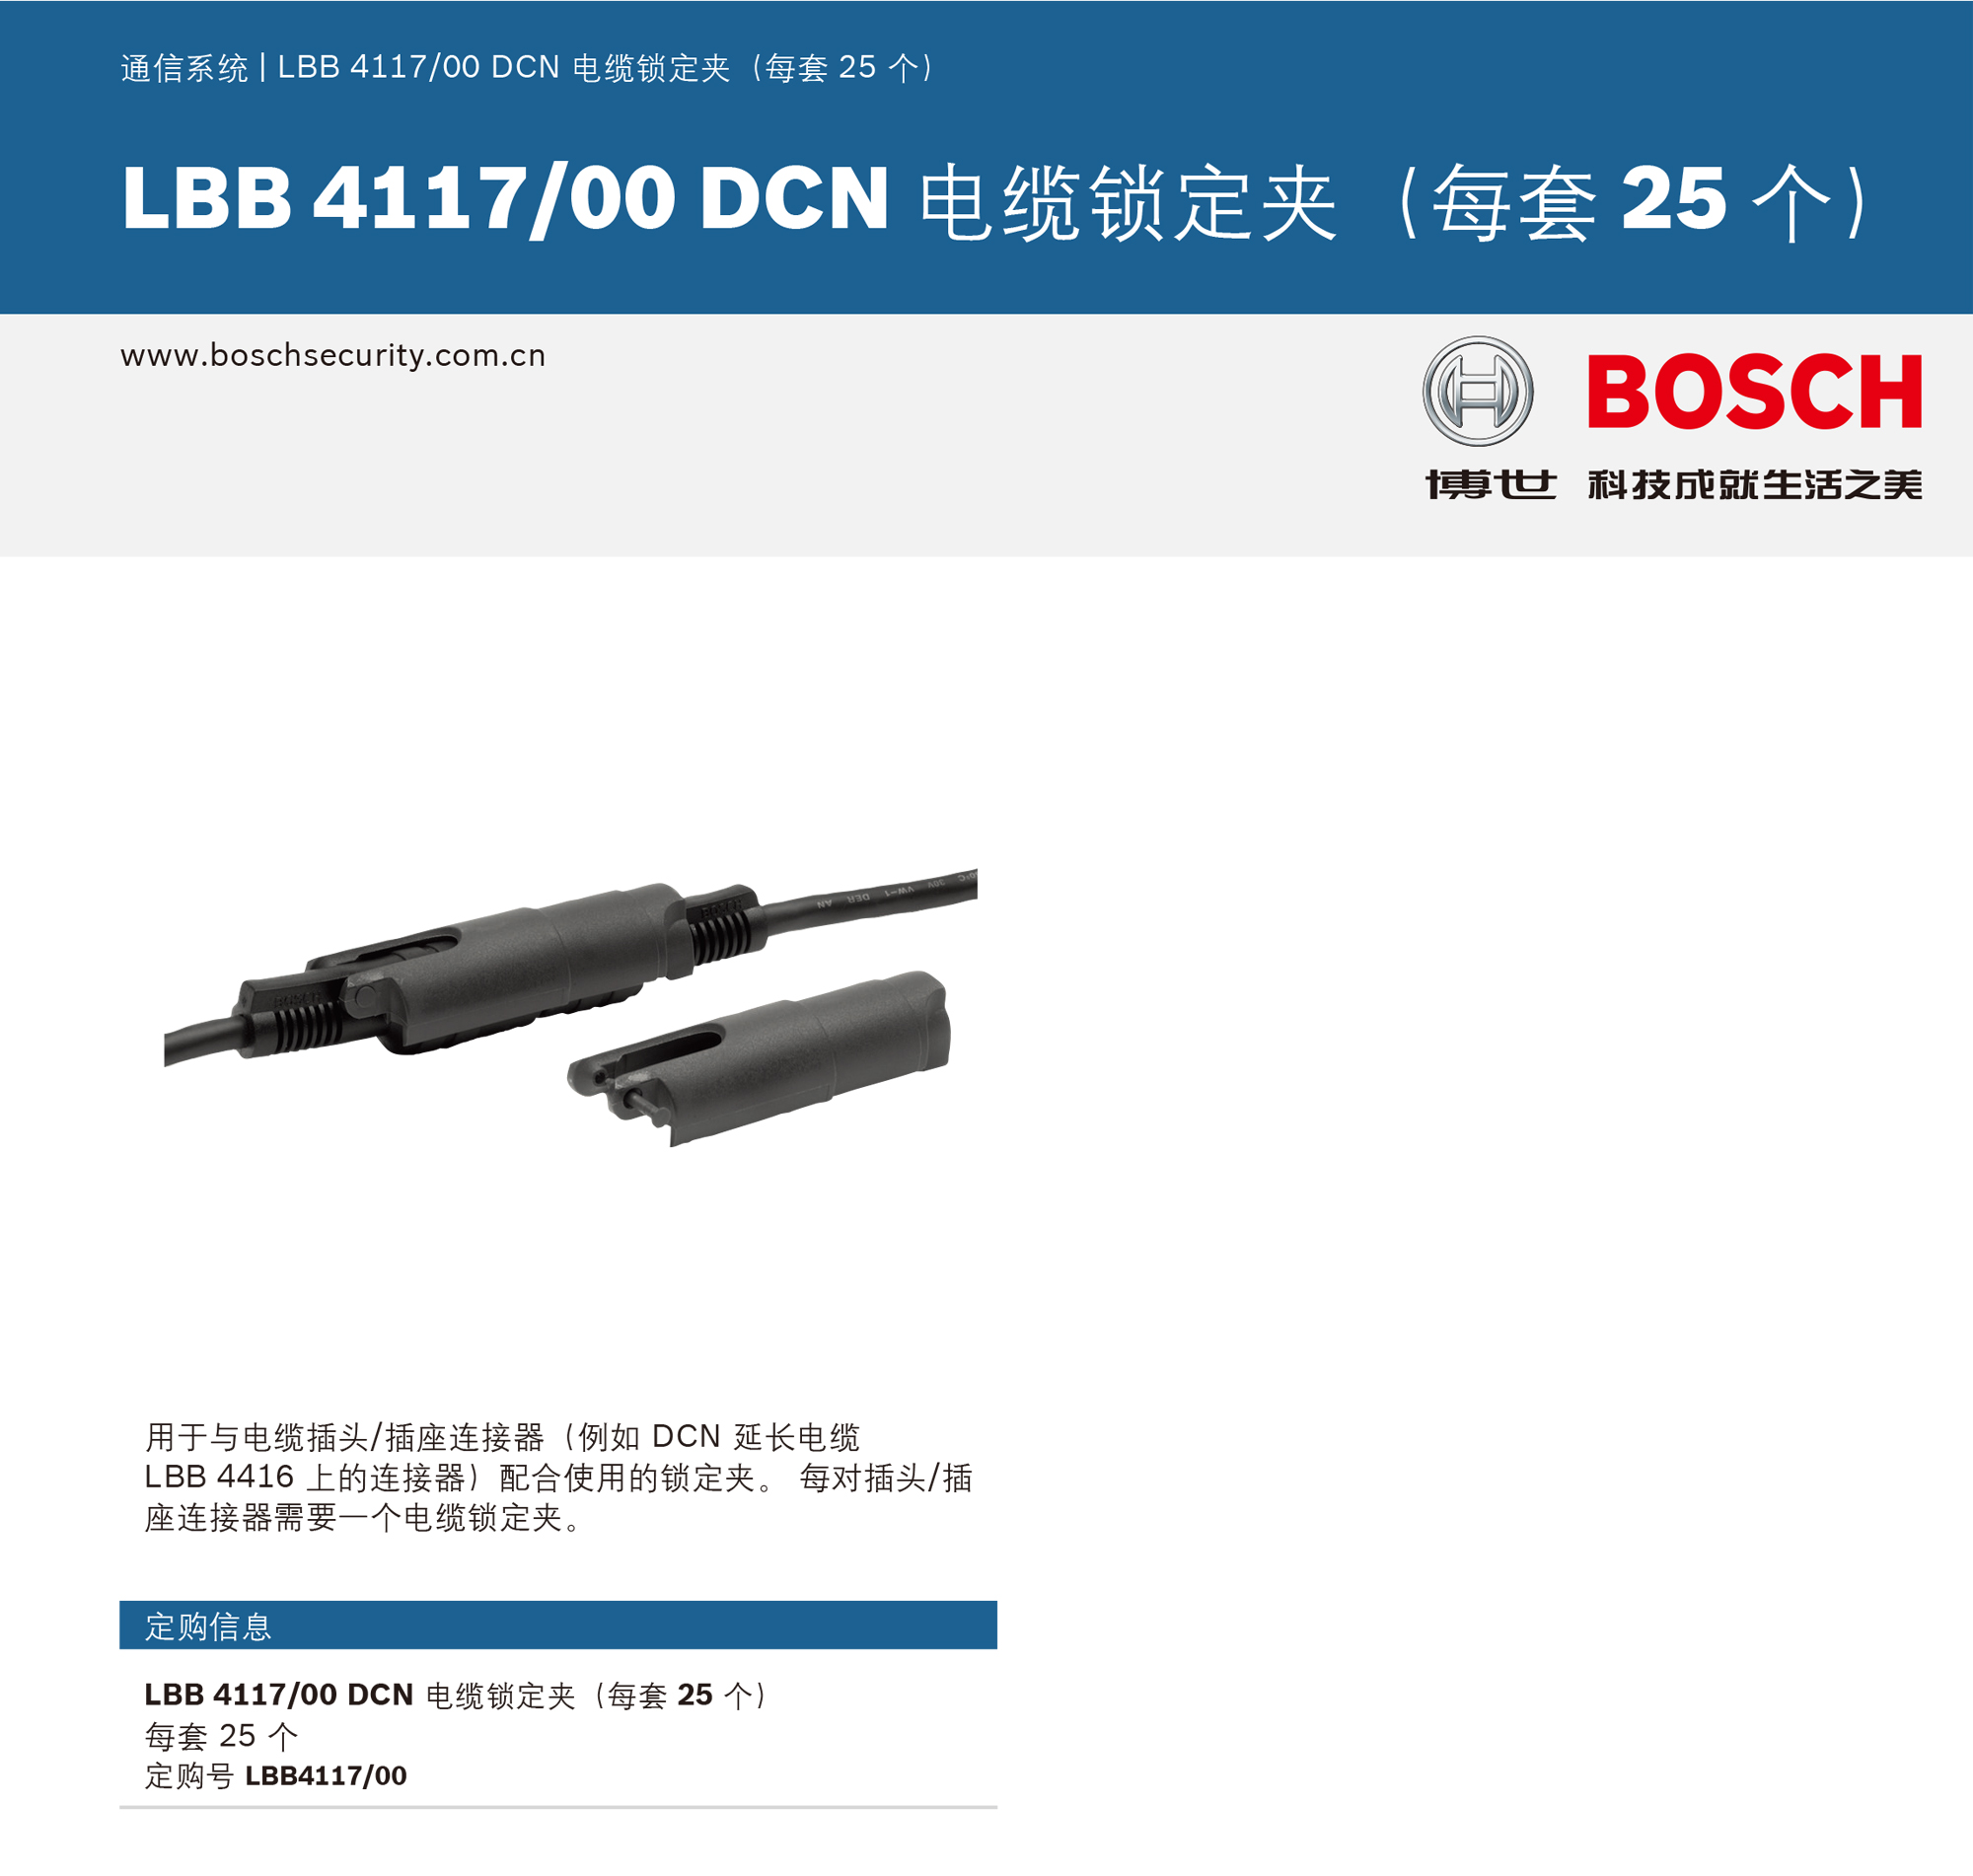 LBB 411700 DCN 电缆锁定夹（每套 25 个）